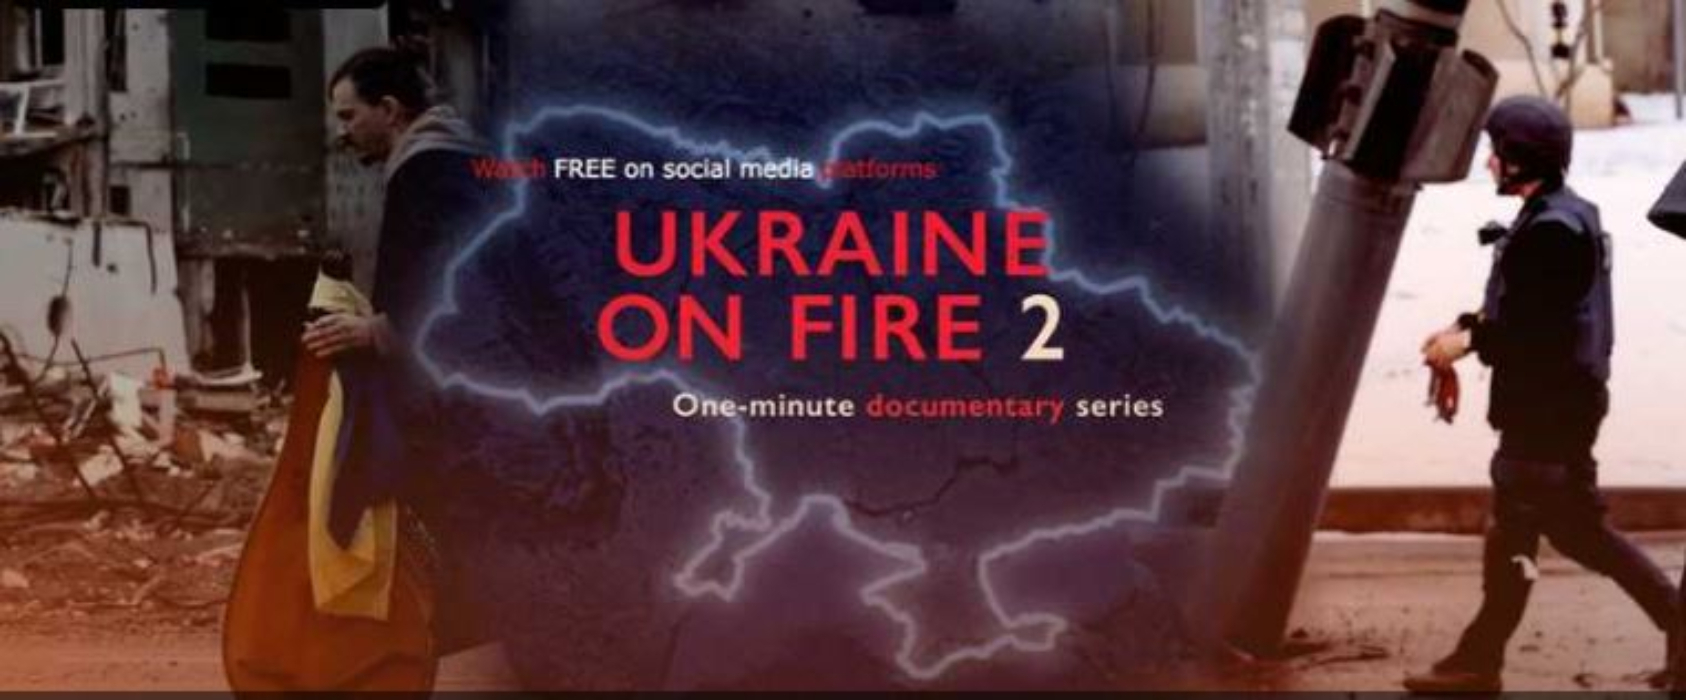 День украинского кино 2022 – Украина в огне 2 – где смотреть сериал онлайн